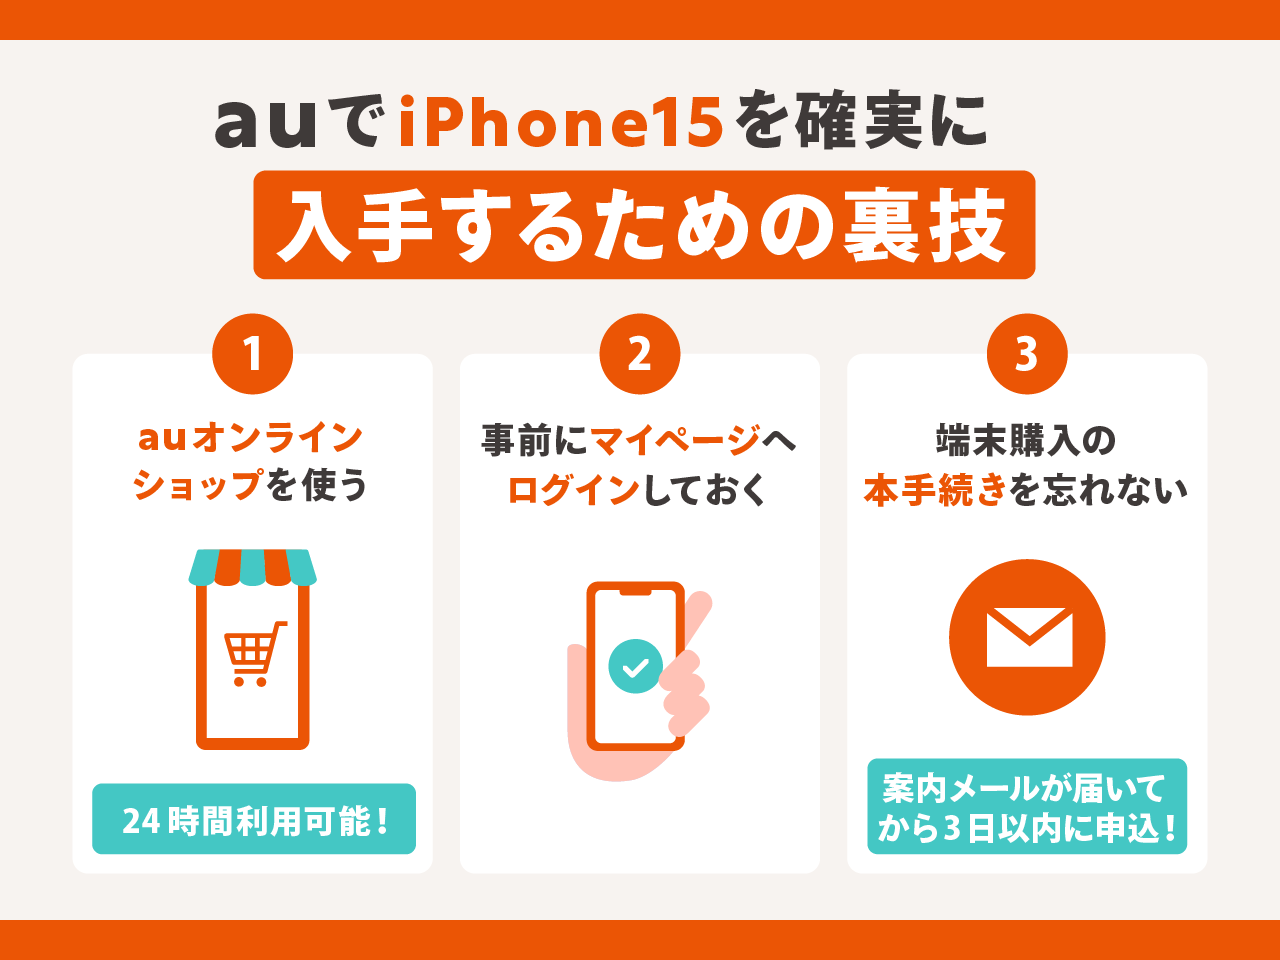 auでiPhone15を確実に入手するための裏技